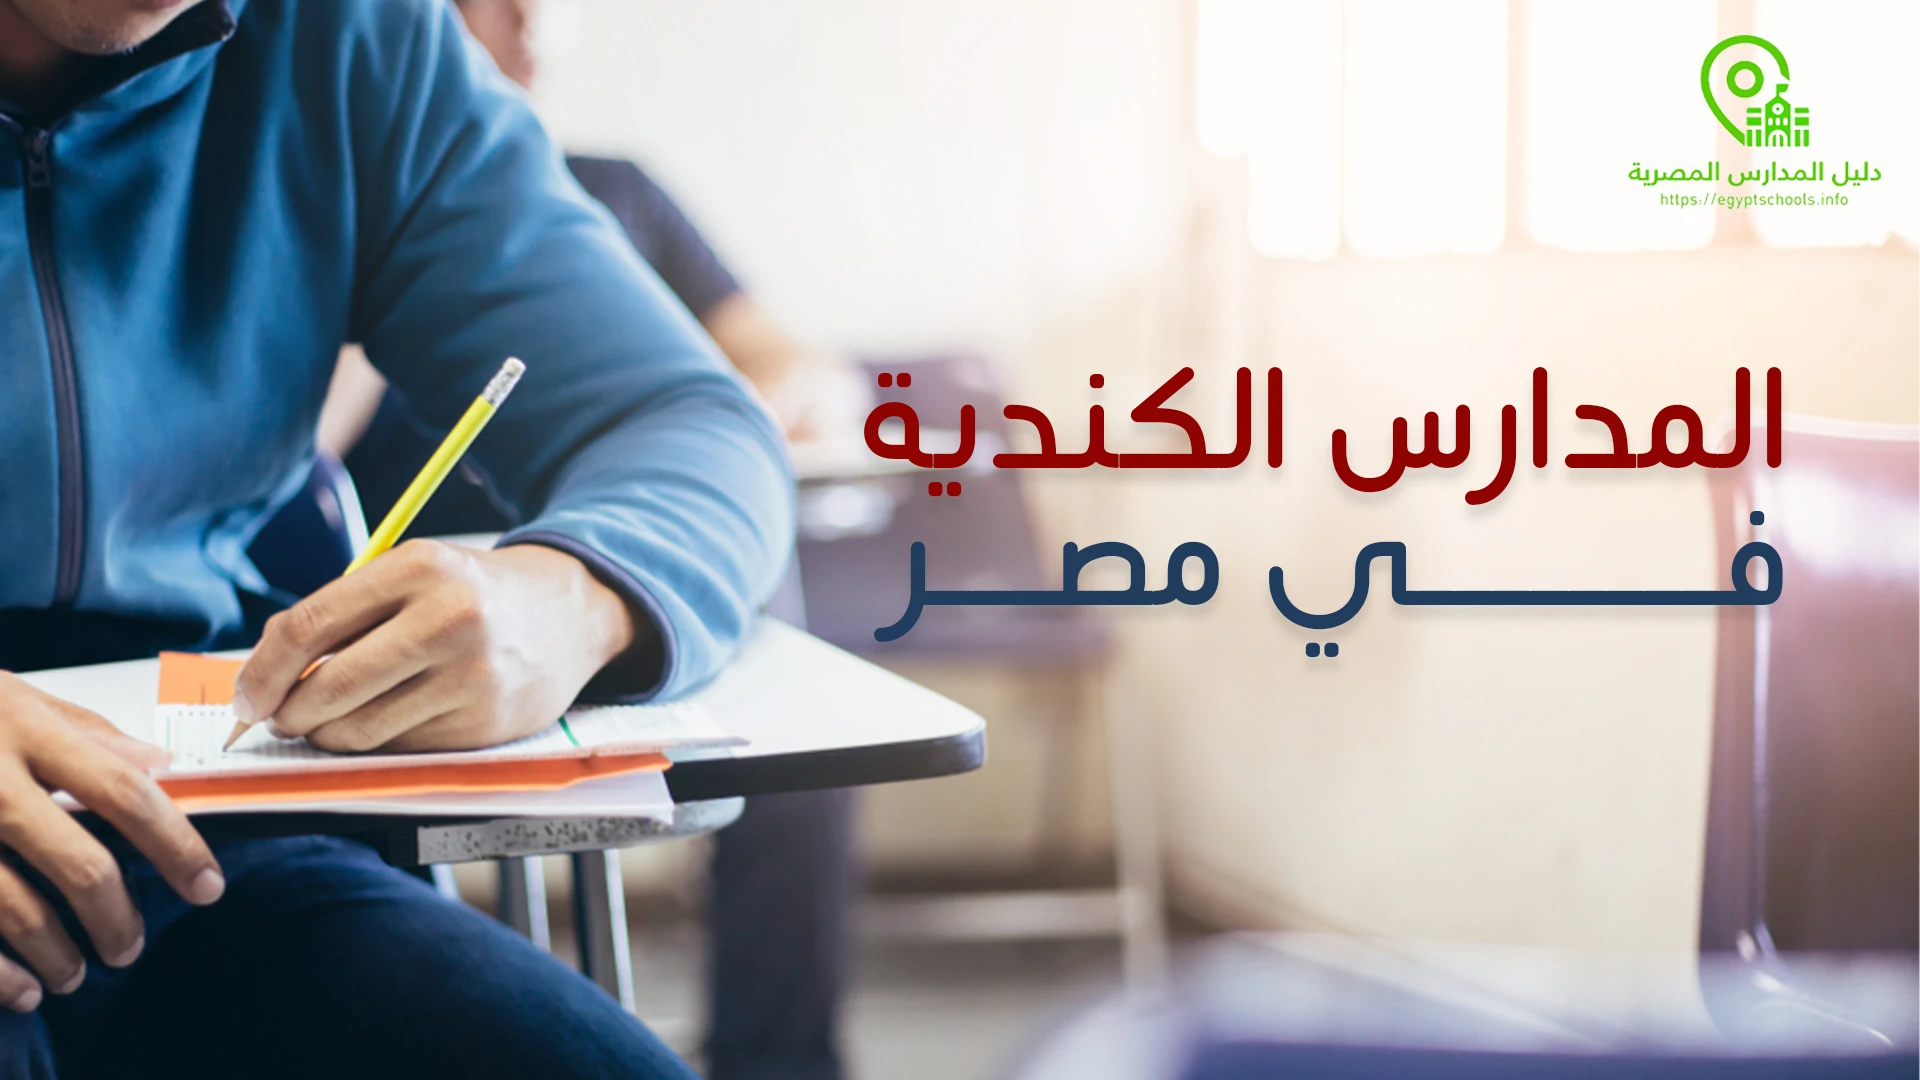 أهم 9 معلومات عن المدارس الكندية في مصر